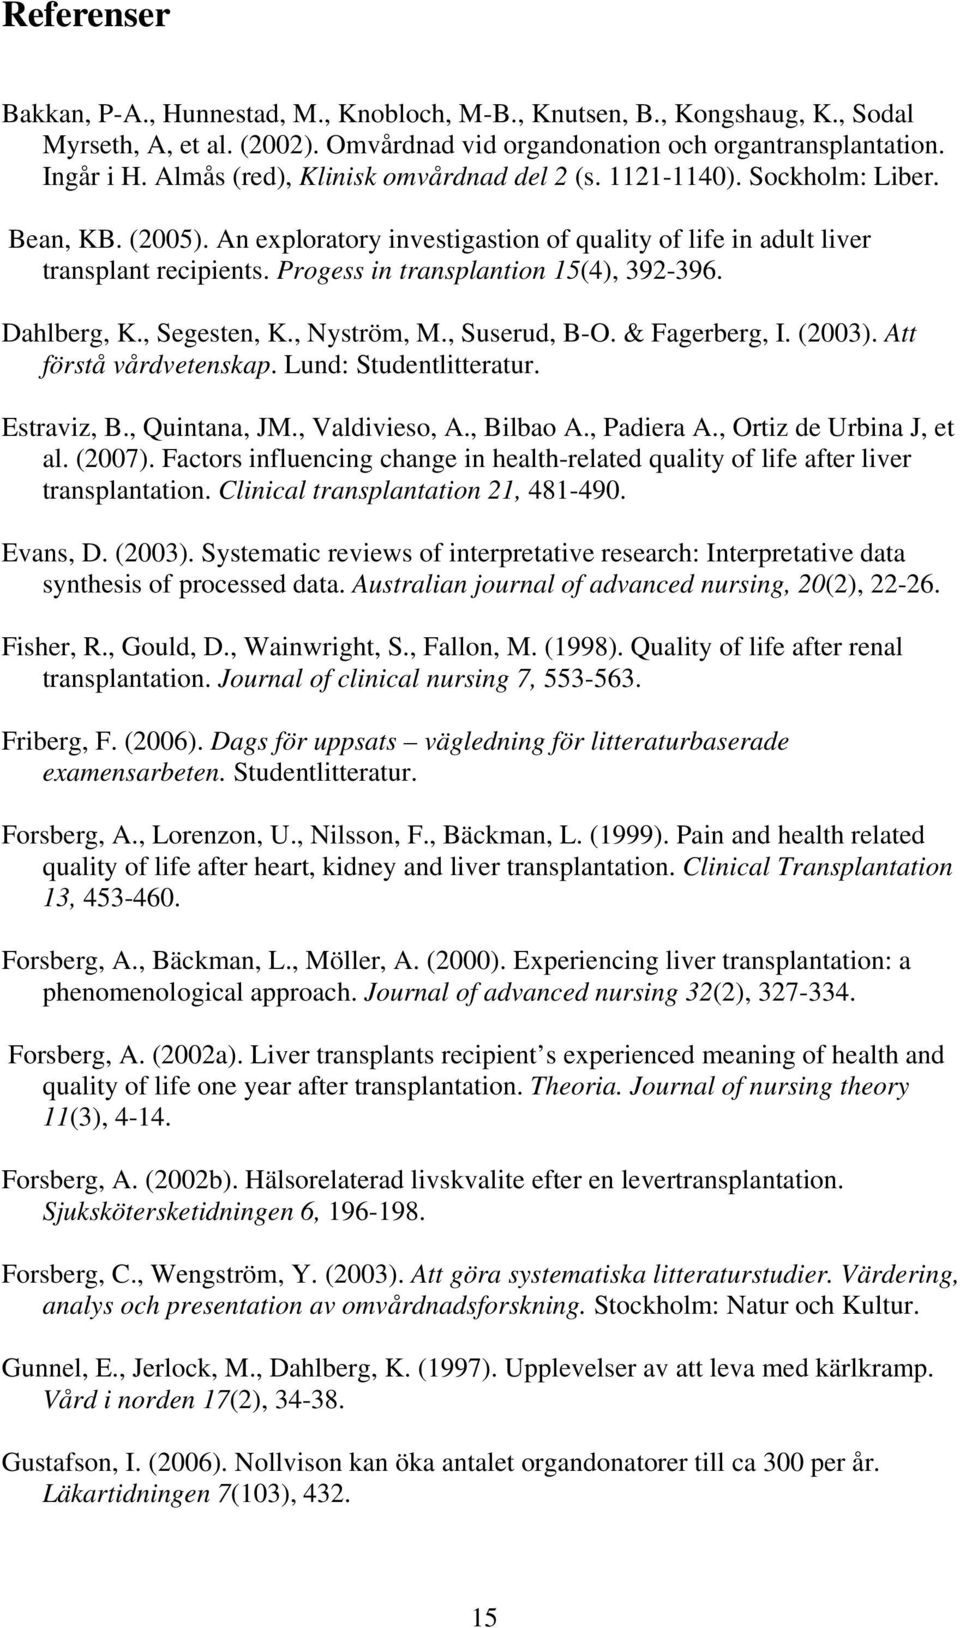 Progess in transplantion 15(4), 392-396. Dahlberg, K., Segesten, K., Nyström, M., Suserud, B-O. & Fagerberg, I. (2003). Att förstå vårdvetenskap. Lund: Studentlitteratur. Estraviz, B., Quintana, JM.